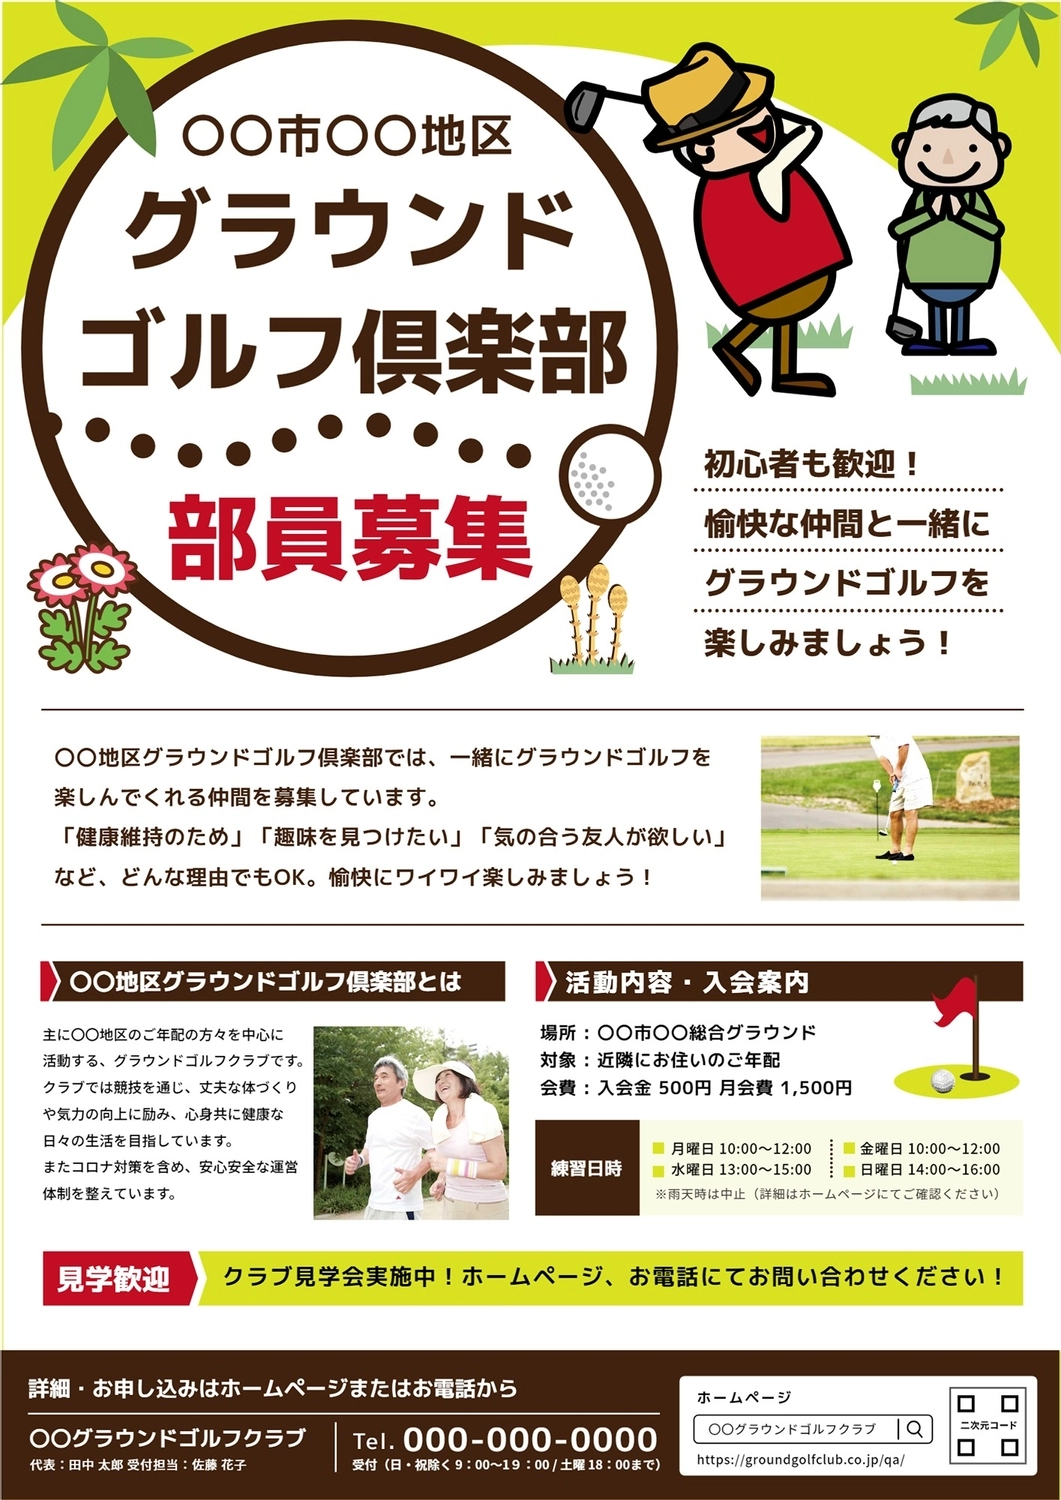 グラウンドゴルフ倶楽部募集チラシ, advertisement, create, design, Flyer template